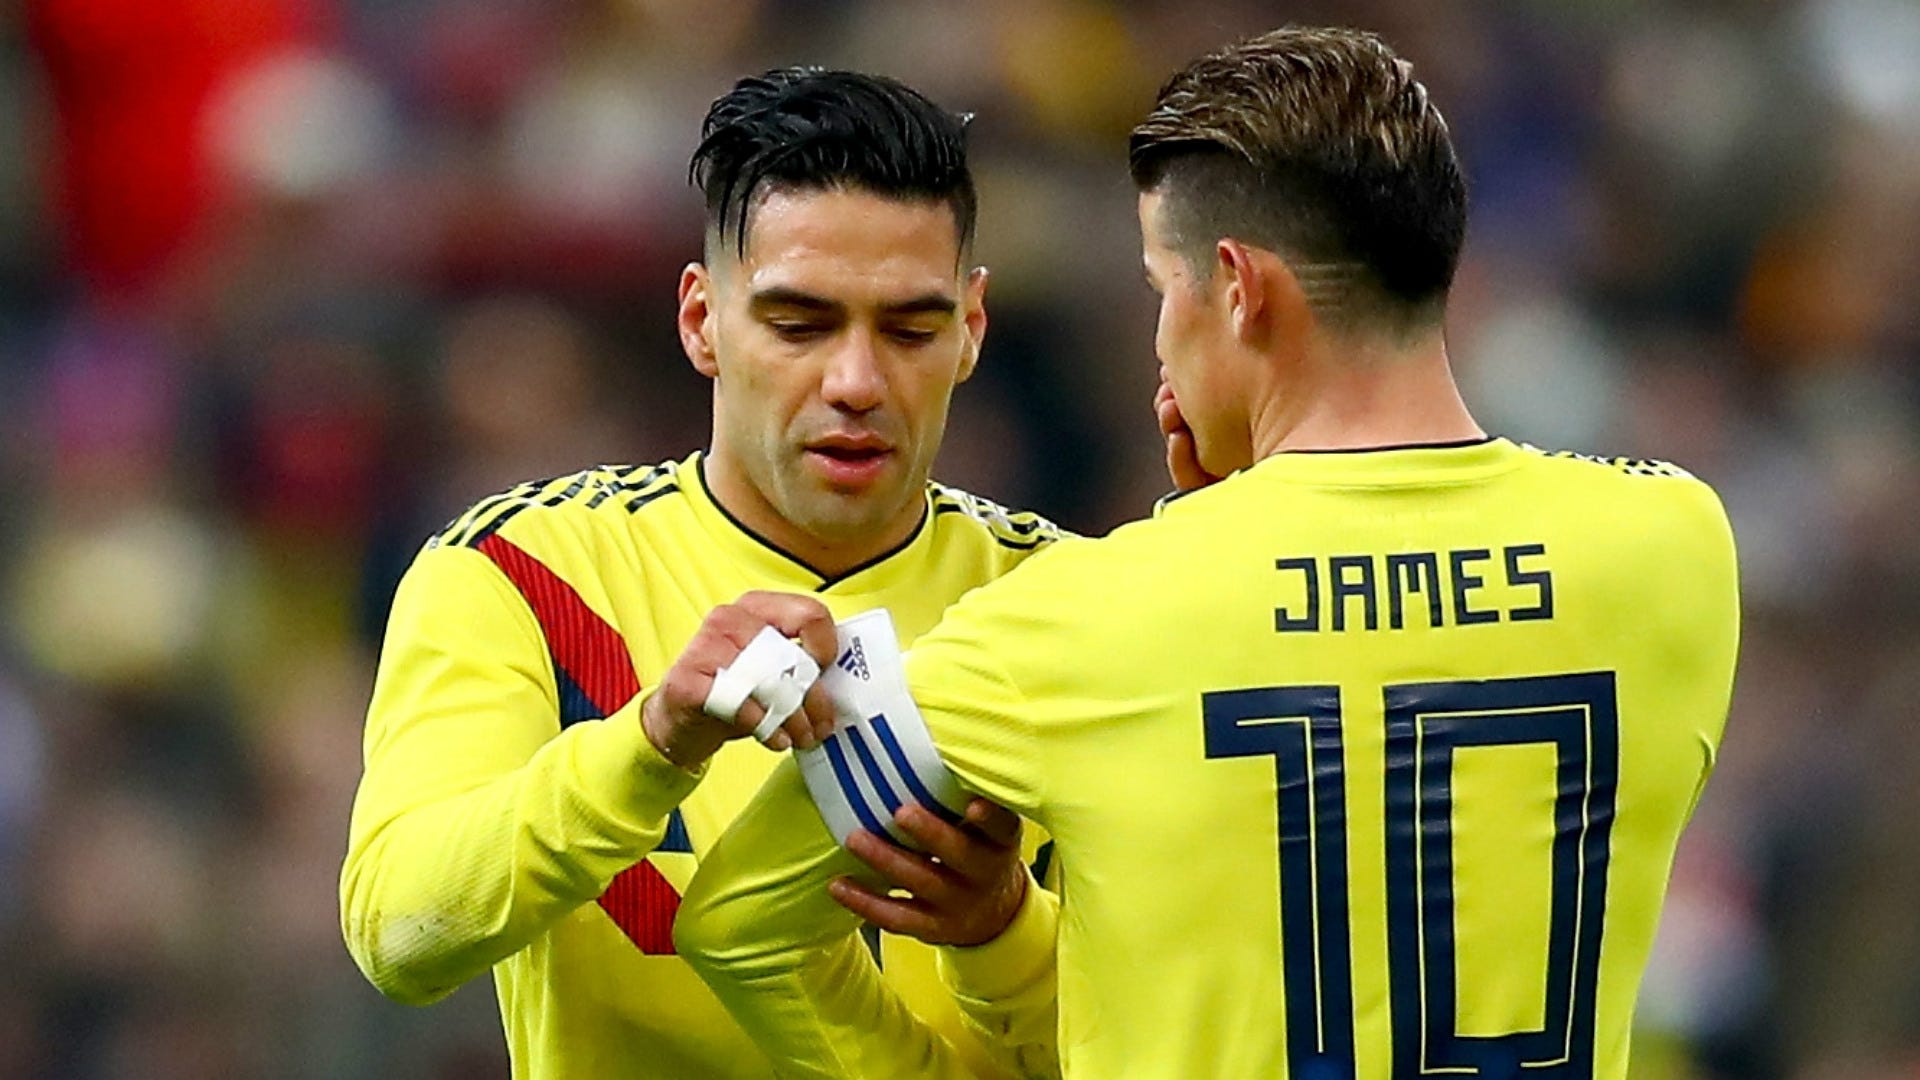 Polonia vs. Colombia en el Mundial Rusia 2018: formación, día, horario, y TV | Goal.com Espana